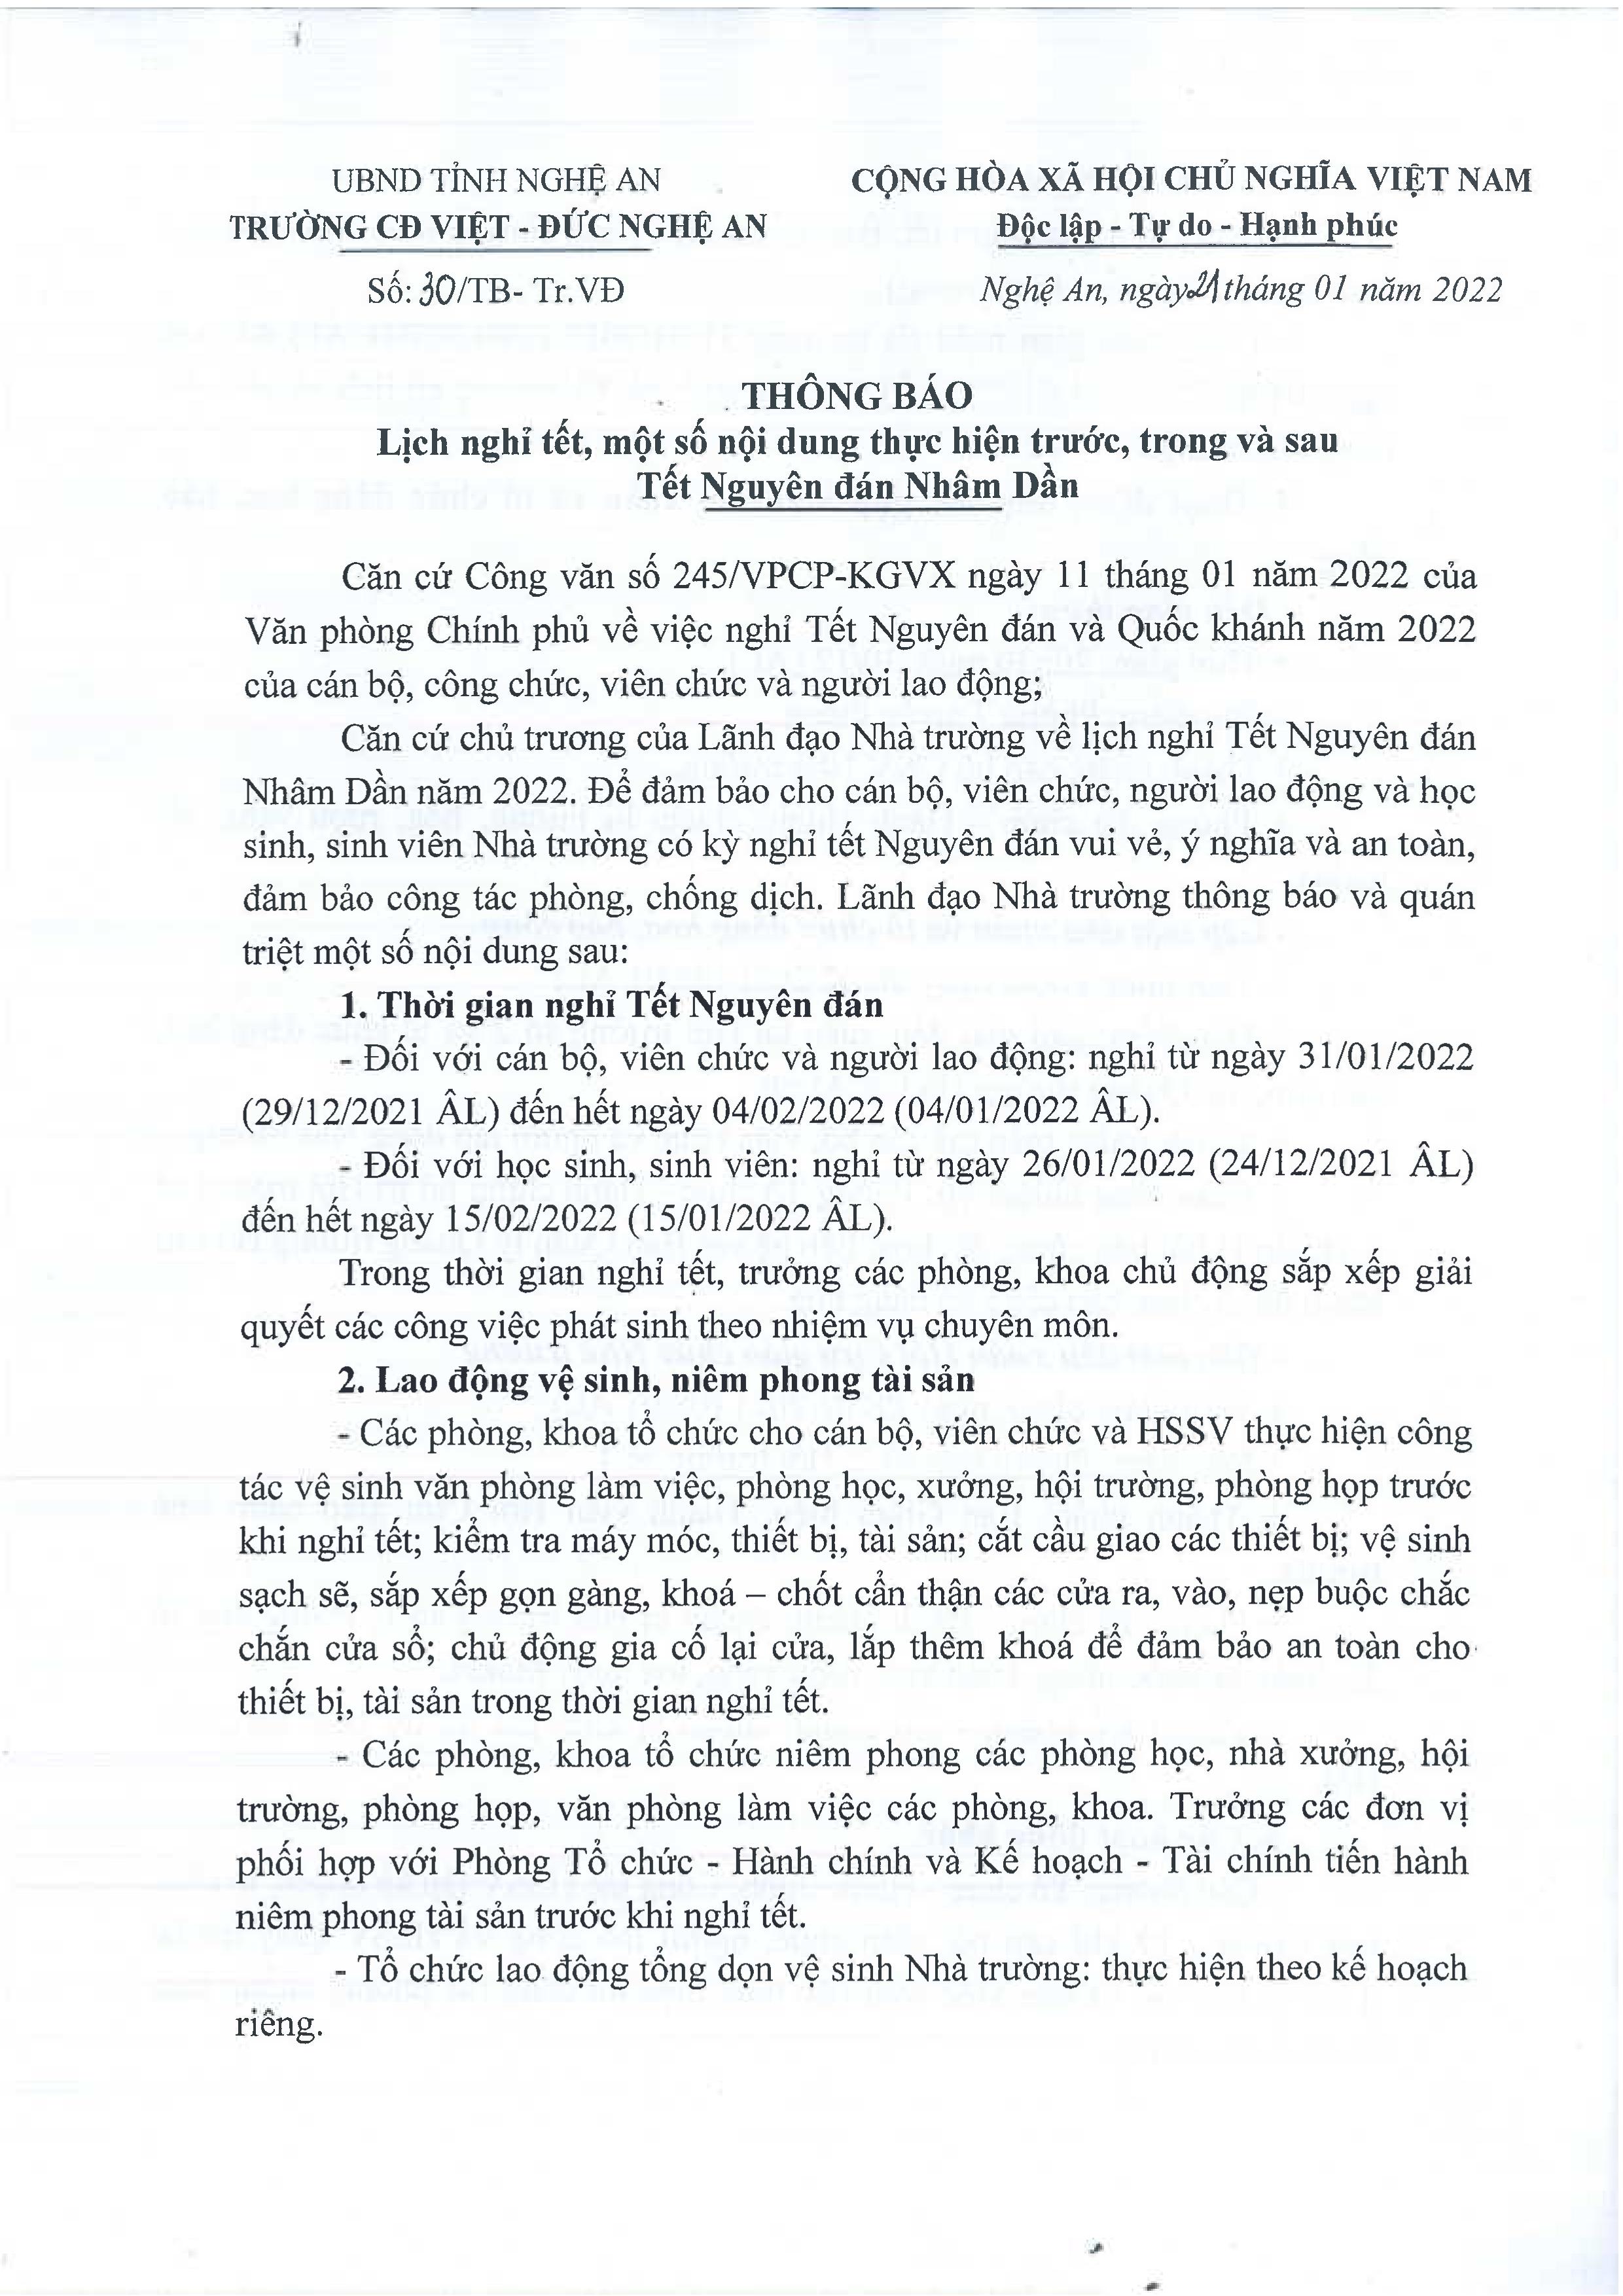 Thông báo số 30/TB-Tr.VĐ ngày 21/01/2022 của Trường Cao đẳng Việt - Đức Nghệ An về Lịch nghỉ tết, một số nội dung thực hiện trước, trong và sau Tết Nguyên đán Nhâm Dần